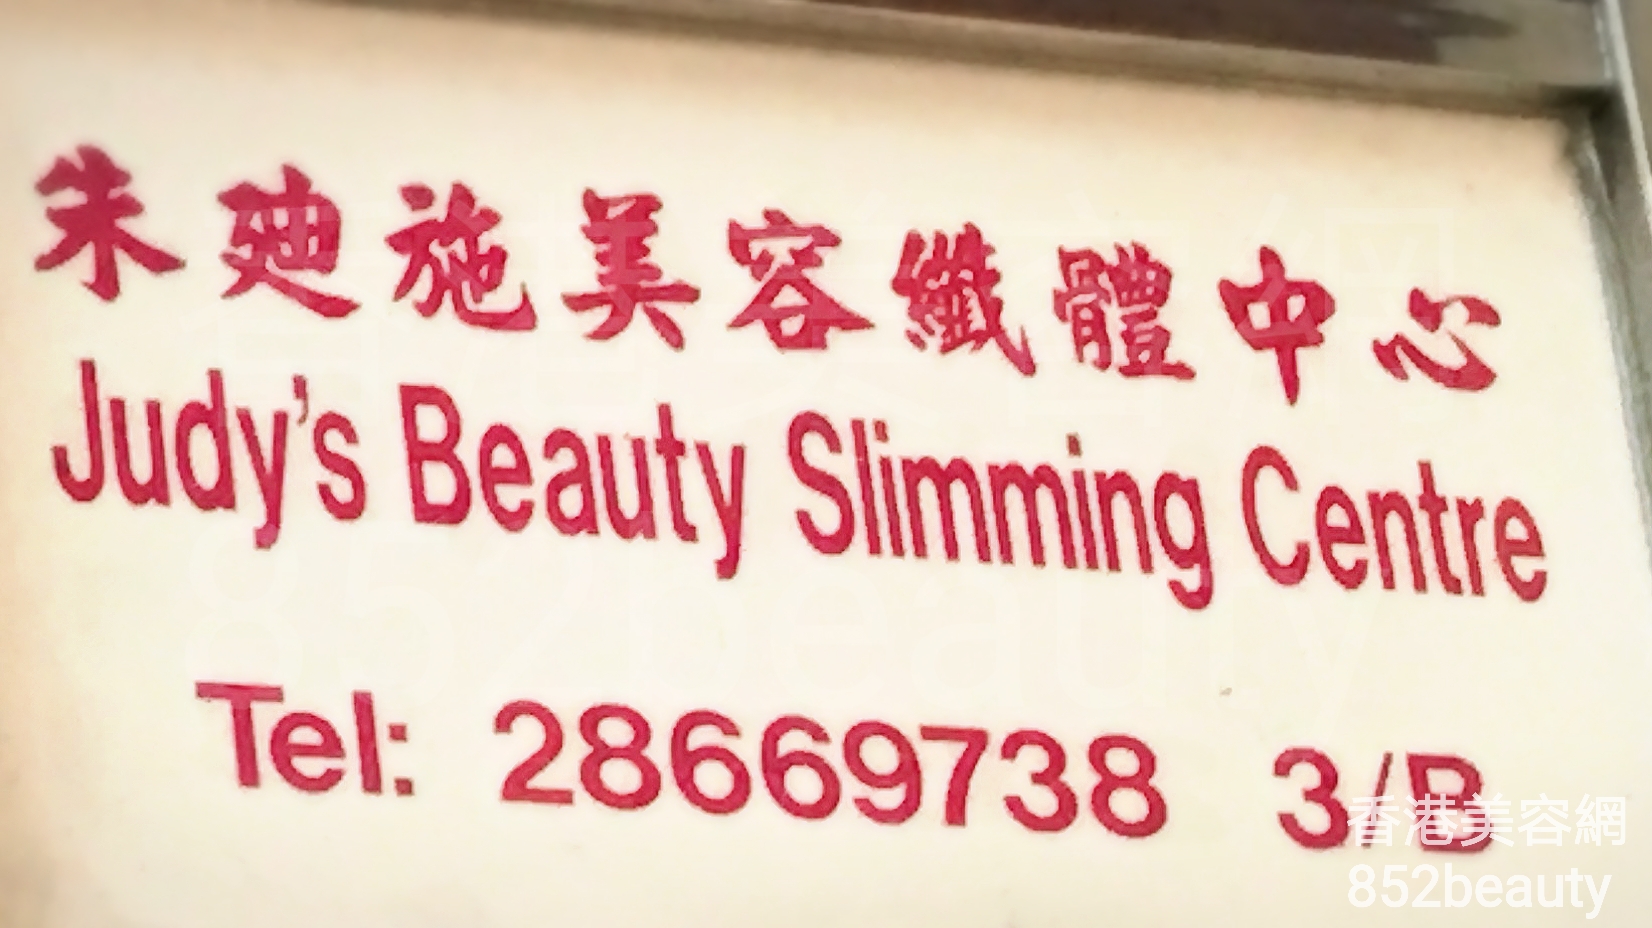 面部护理: 朱廸施美容纖體中心 Judy\'s Beauty Slimming Centre